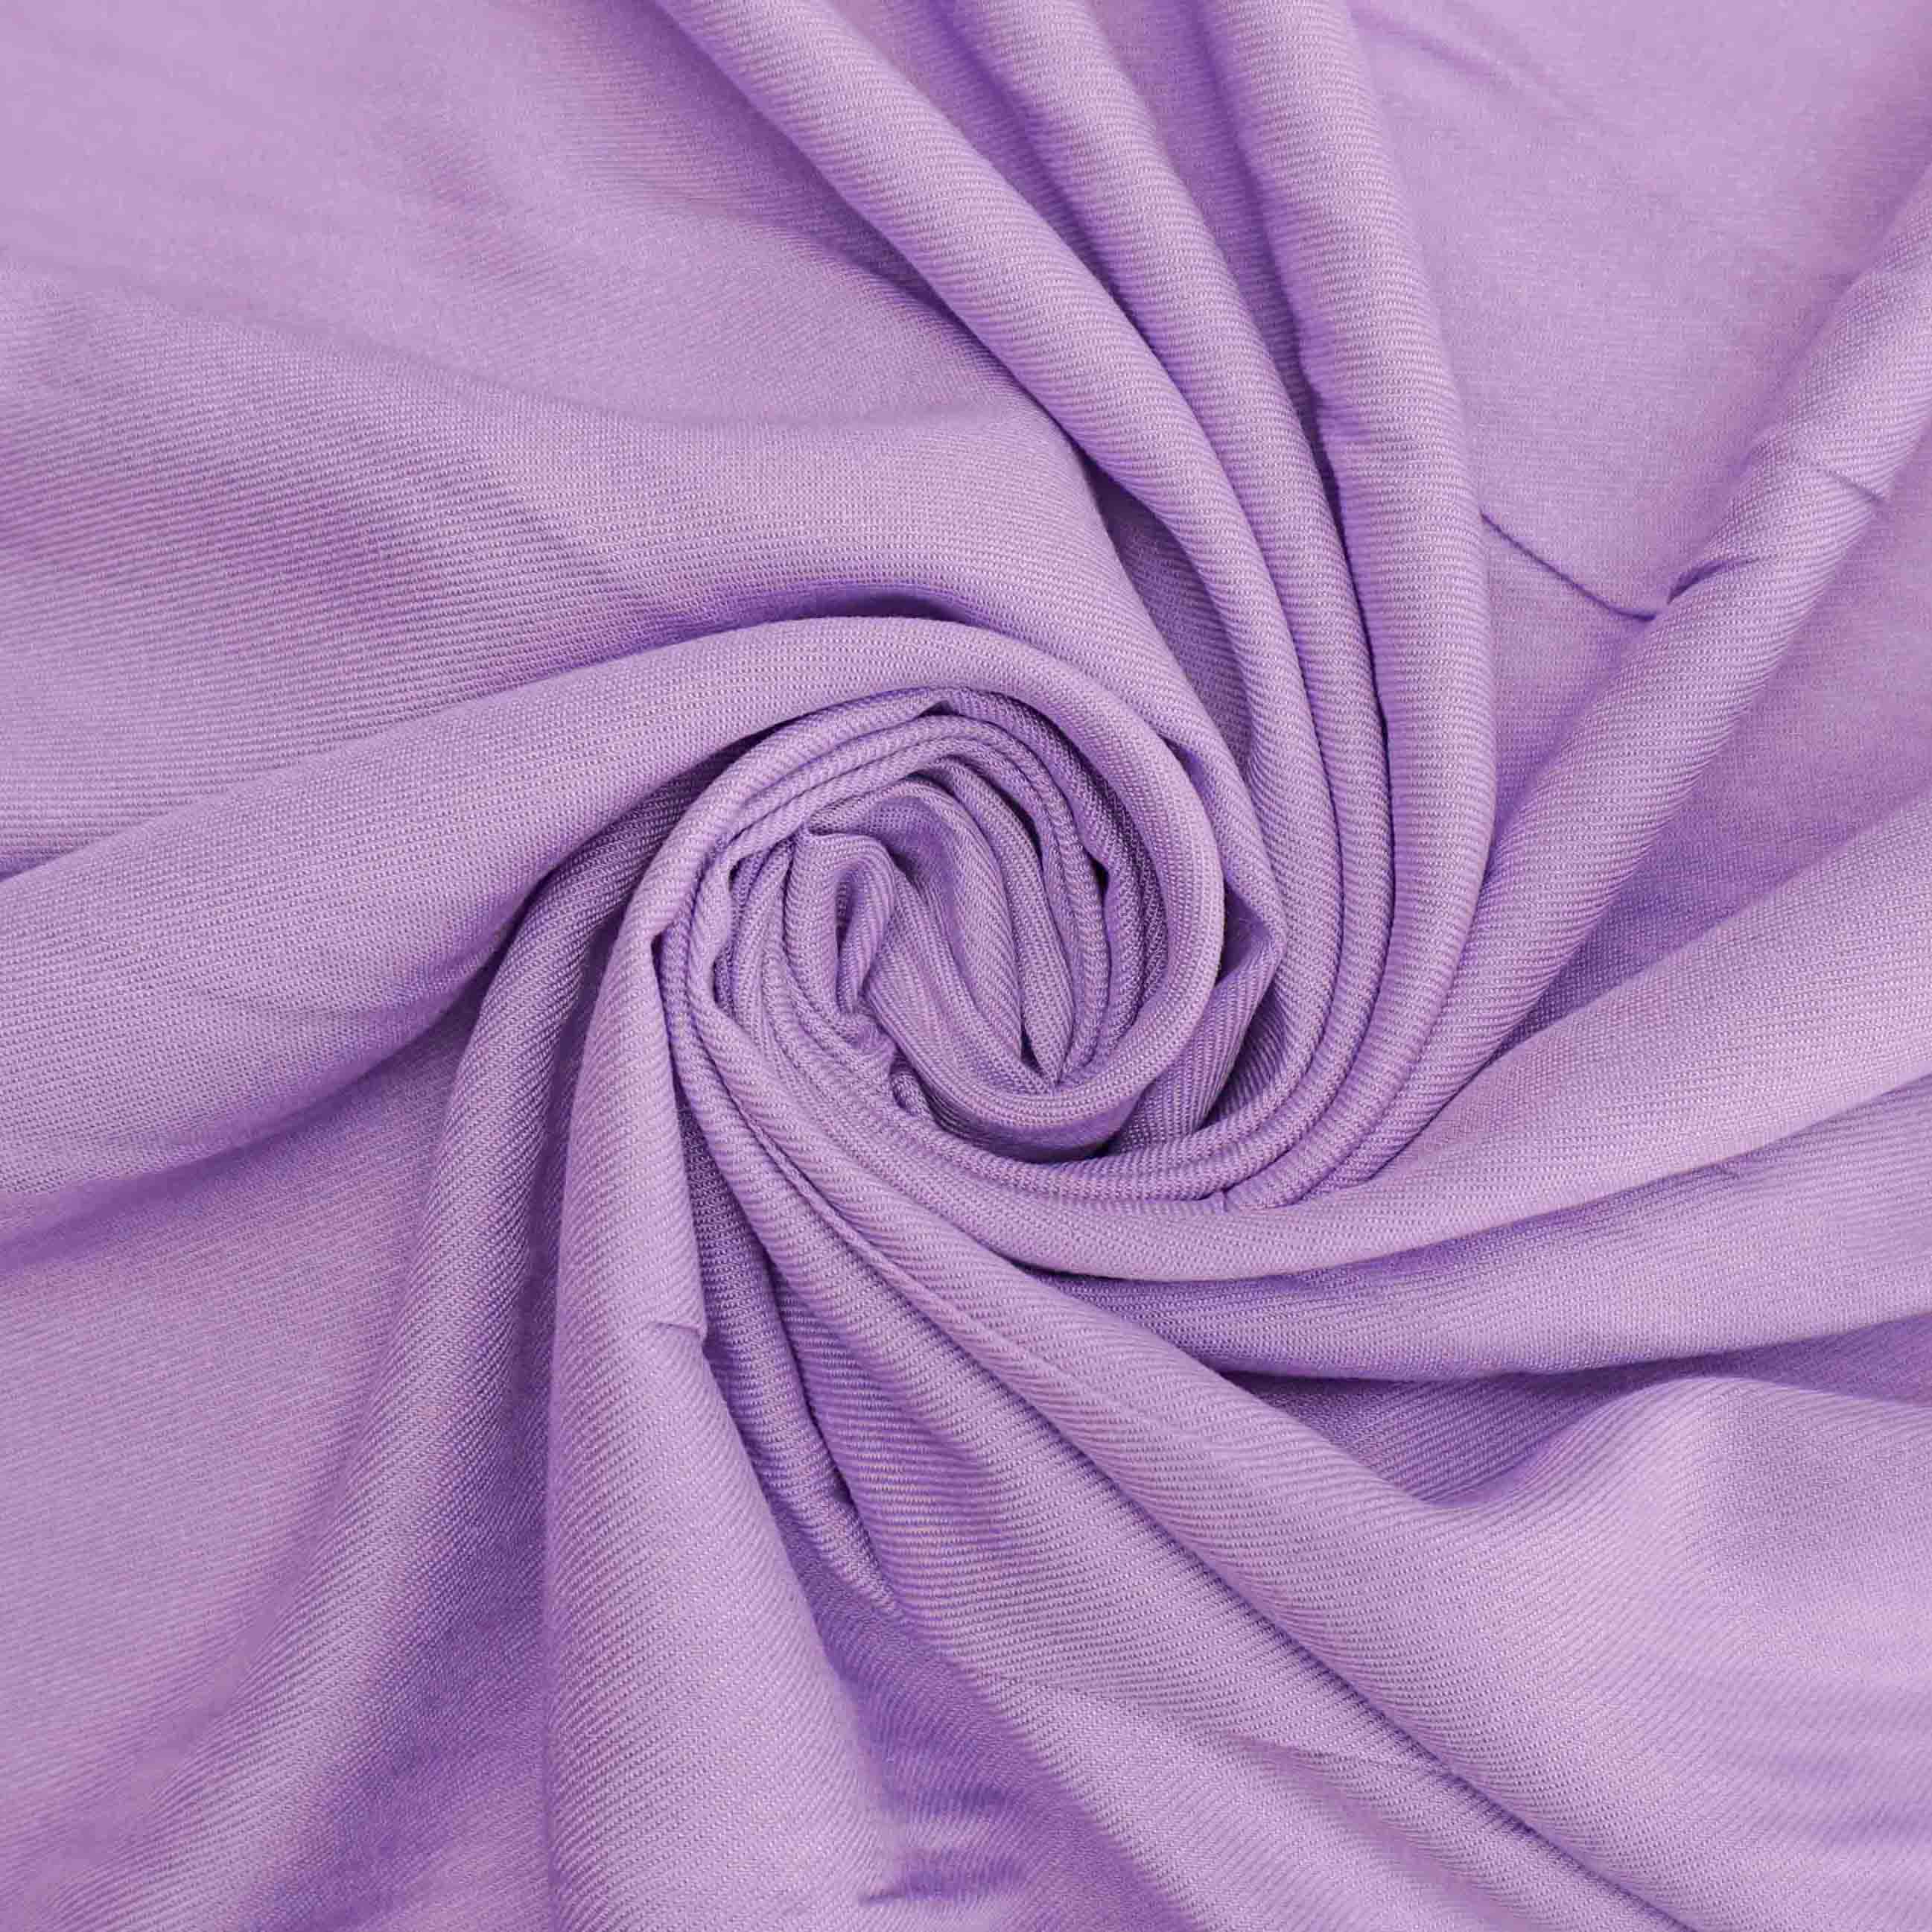 Tecido viscose rayon lilás